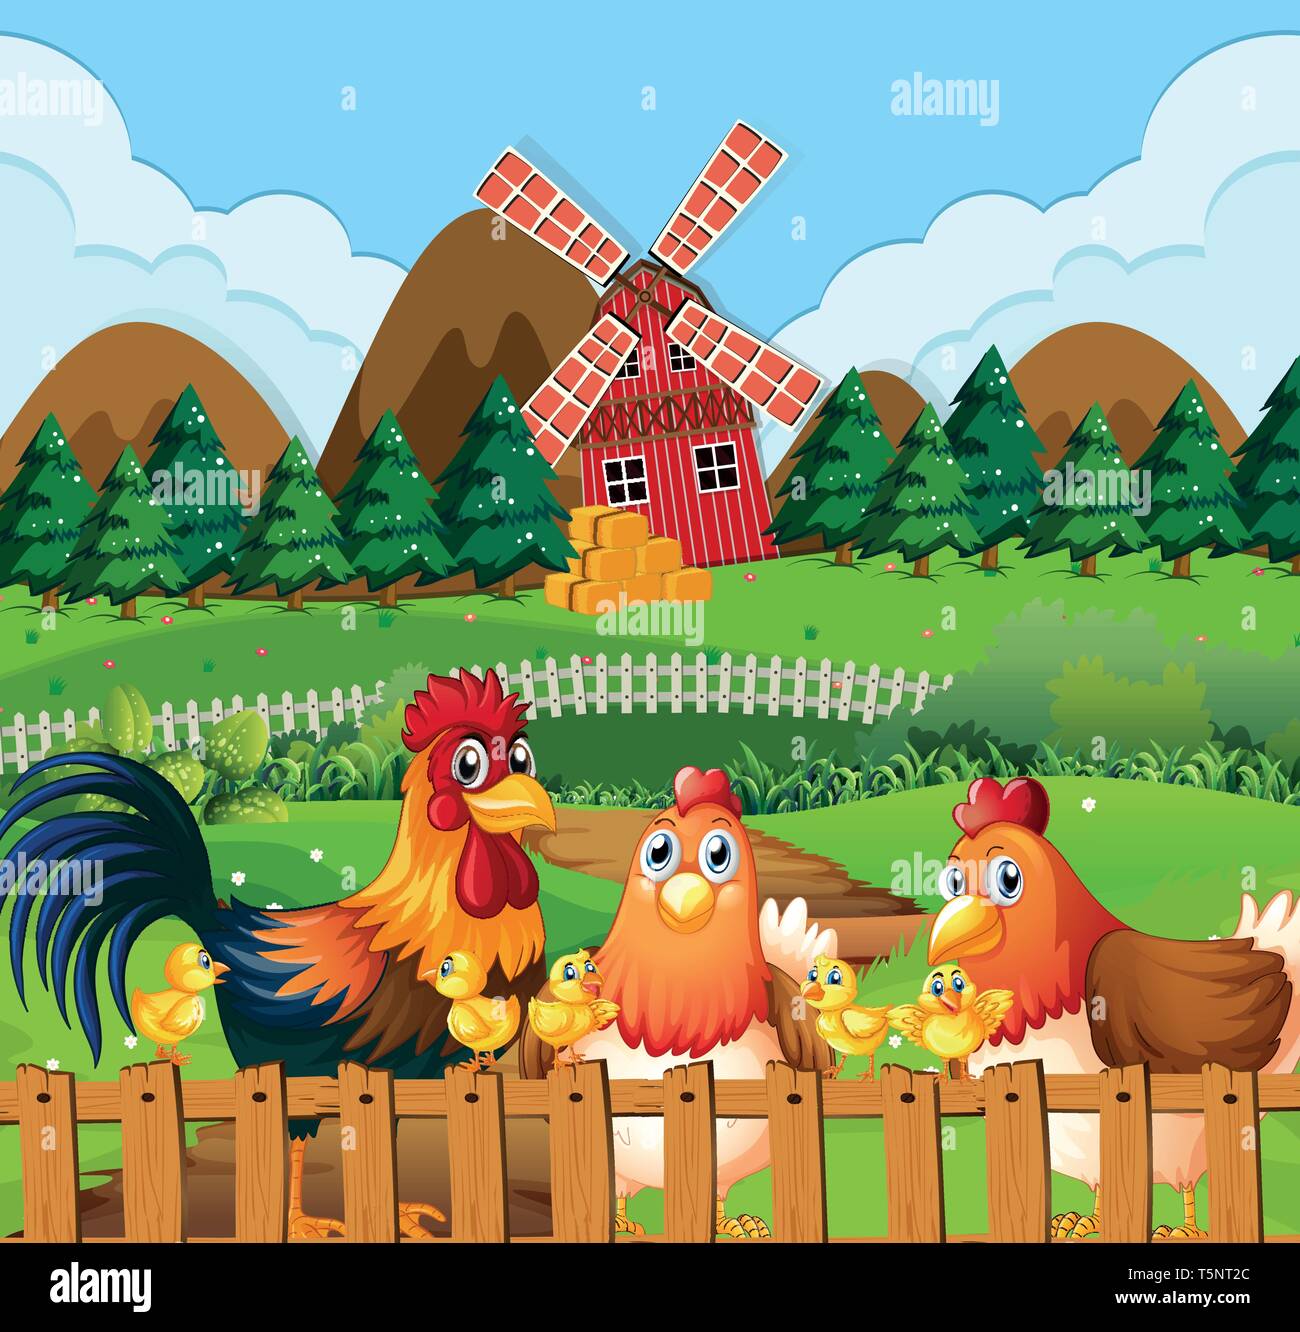 Chicken family at farmland illustration Stock Vector